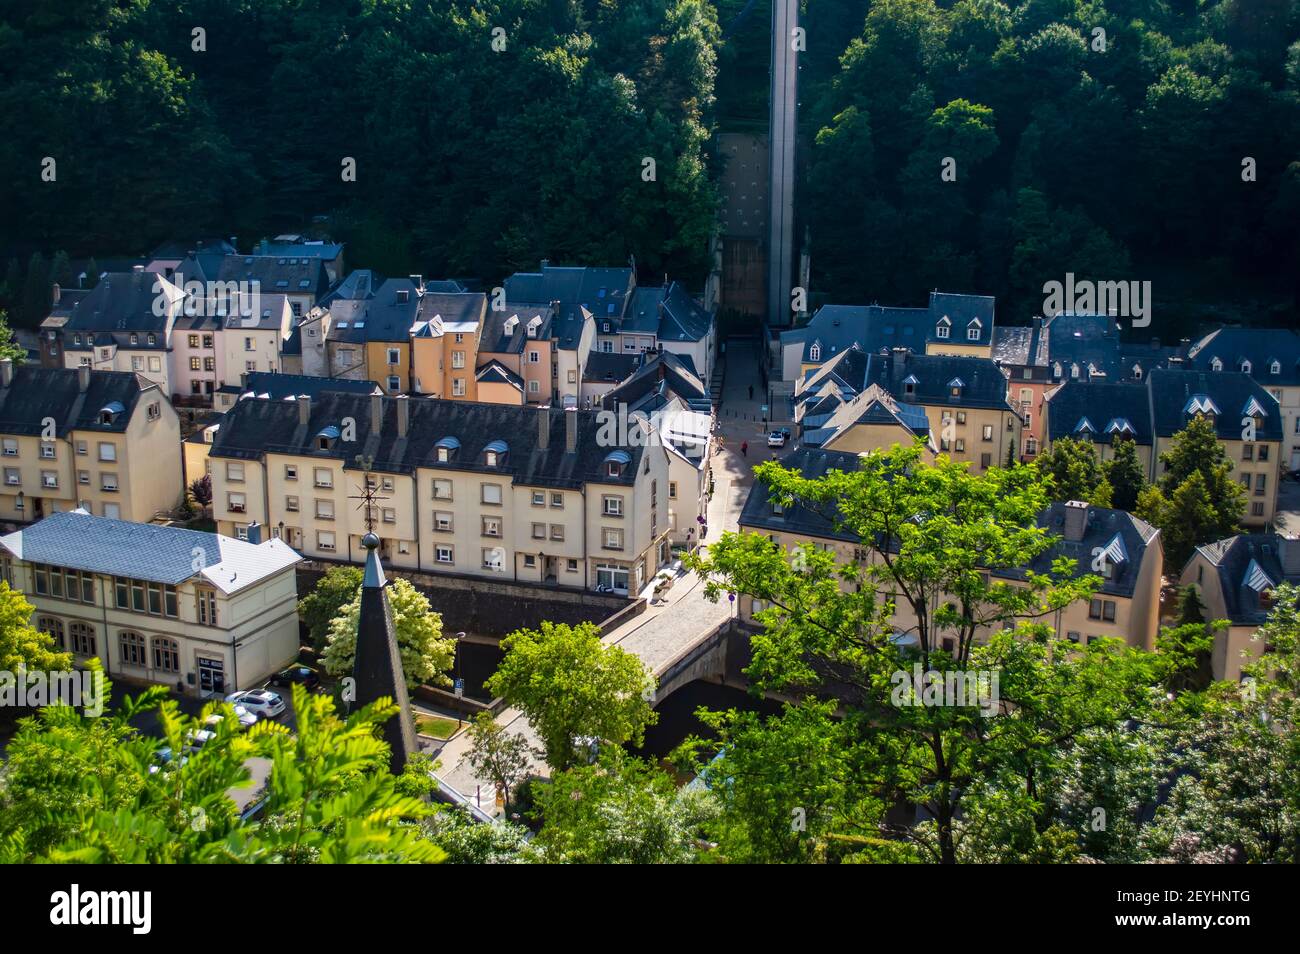 Luxemburgo ciudad, Luxemburgo - 15 de julio de 2019: Casas típicas con tejados grises en el casco antiguo de Luxemburgo ciudad en Europa Foto de stock